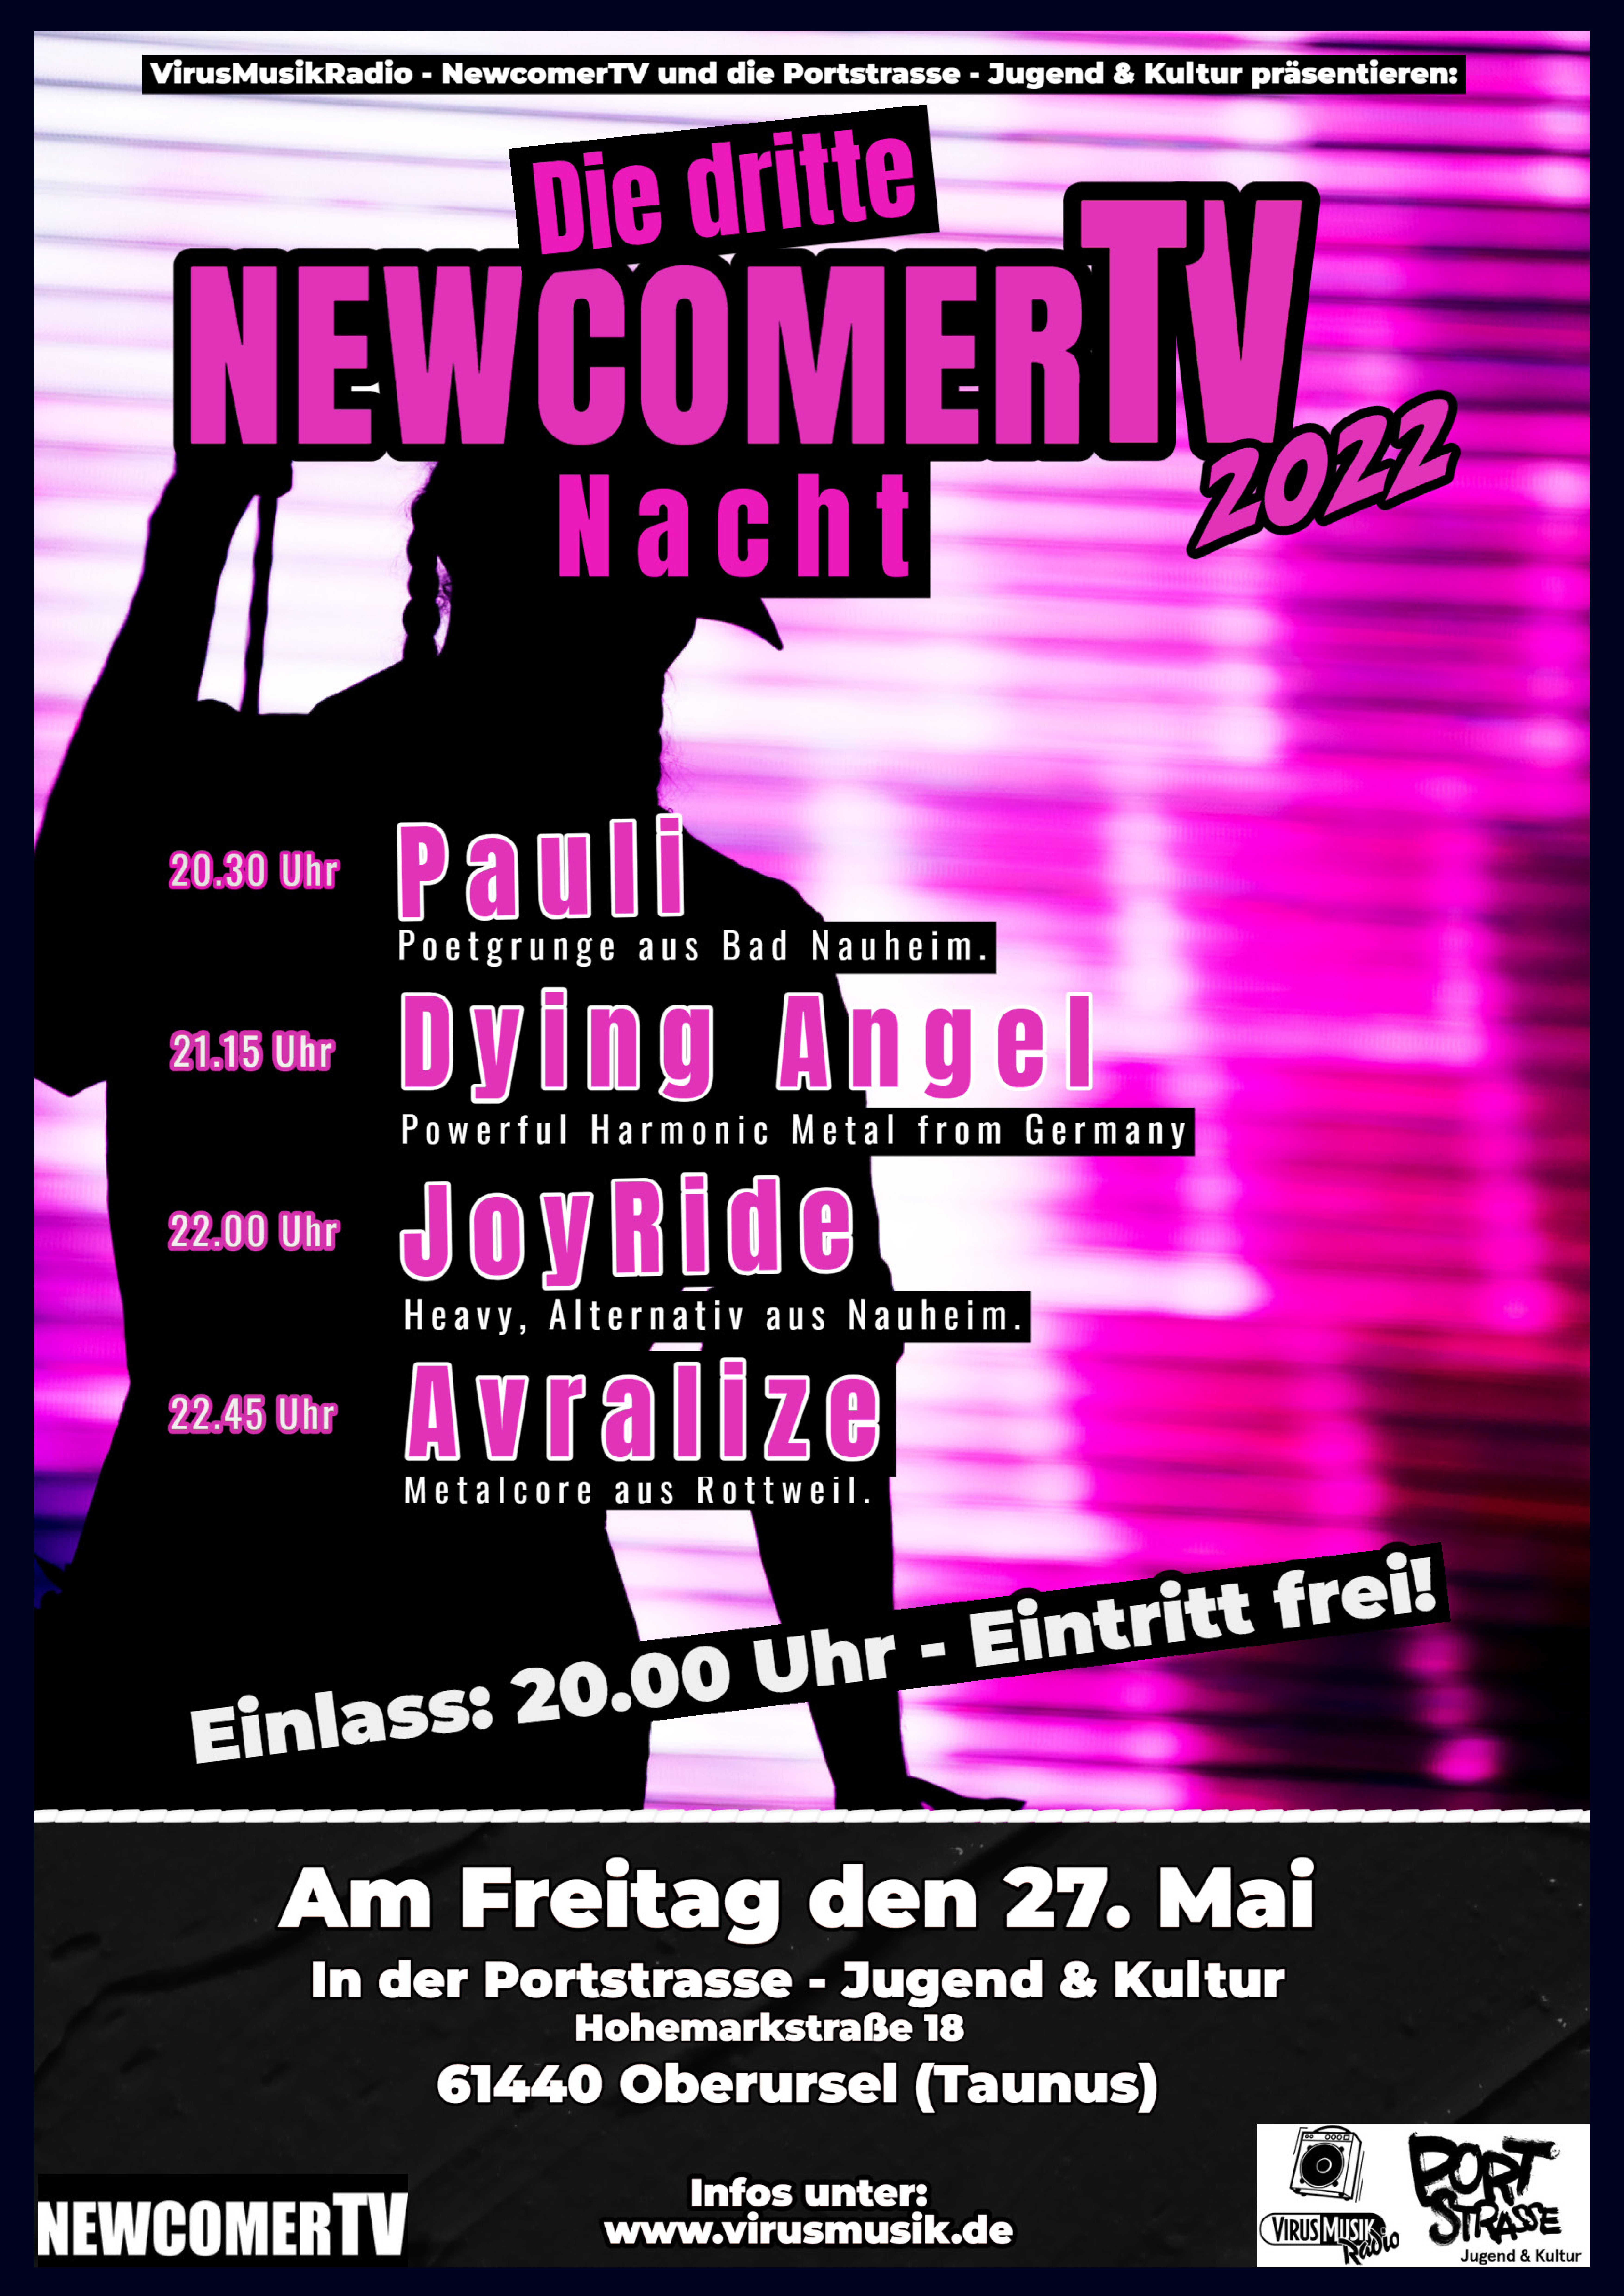 Die dritte NewcomerTV Nacht 2022 in der Portstrasse Jugend & Kultur.